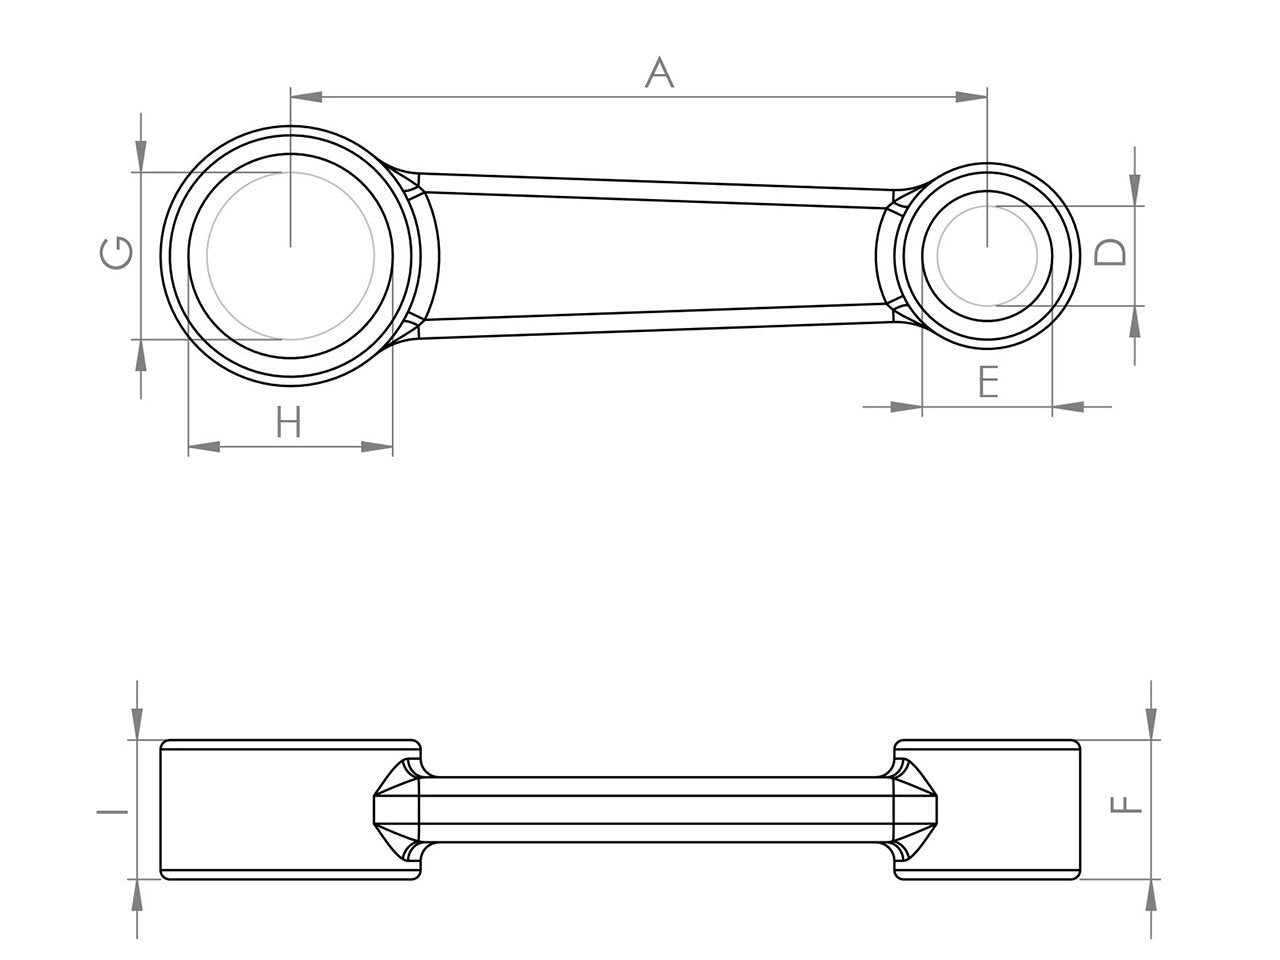 Zeichnung Barikit Pleuel für einen Yamaha YZ 65 Motor mit Bemaßung.